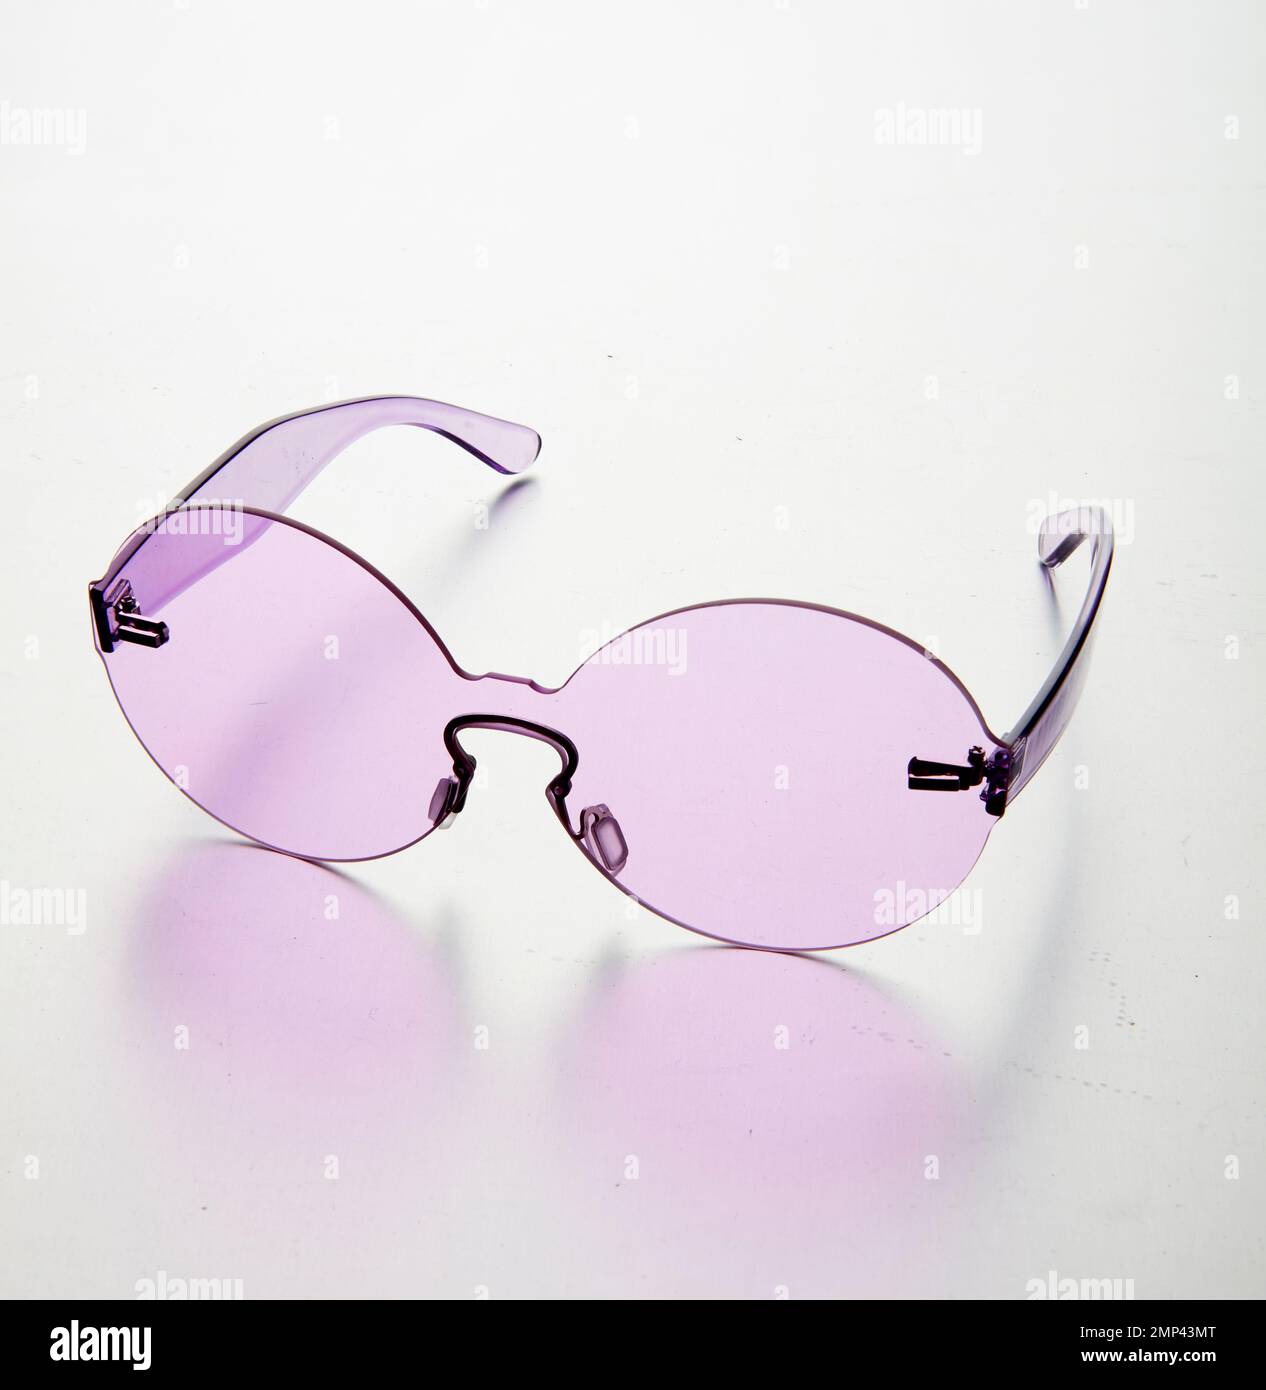 Farbige Kunststoff Sonnenbrille Mode-Artikel trendy einfaches Design Designerfarben groovige 70er Jahre Stil hippe hippe runde ikonische intensive Brille Stockfoto